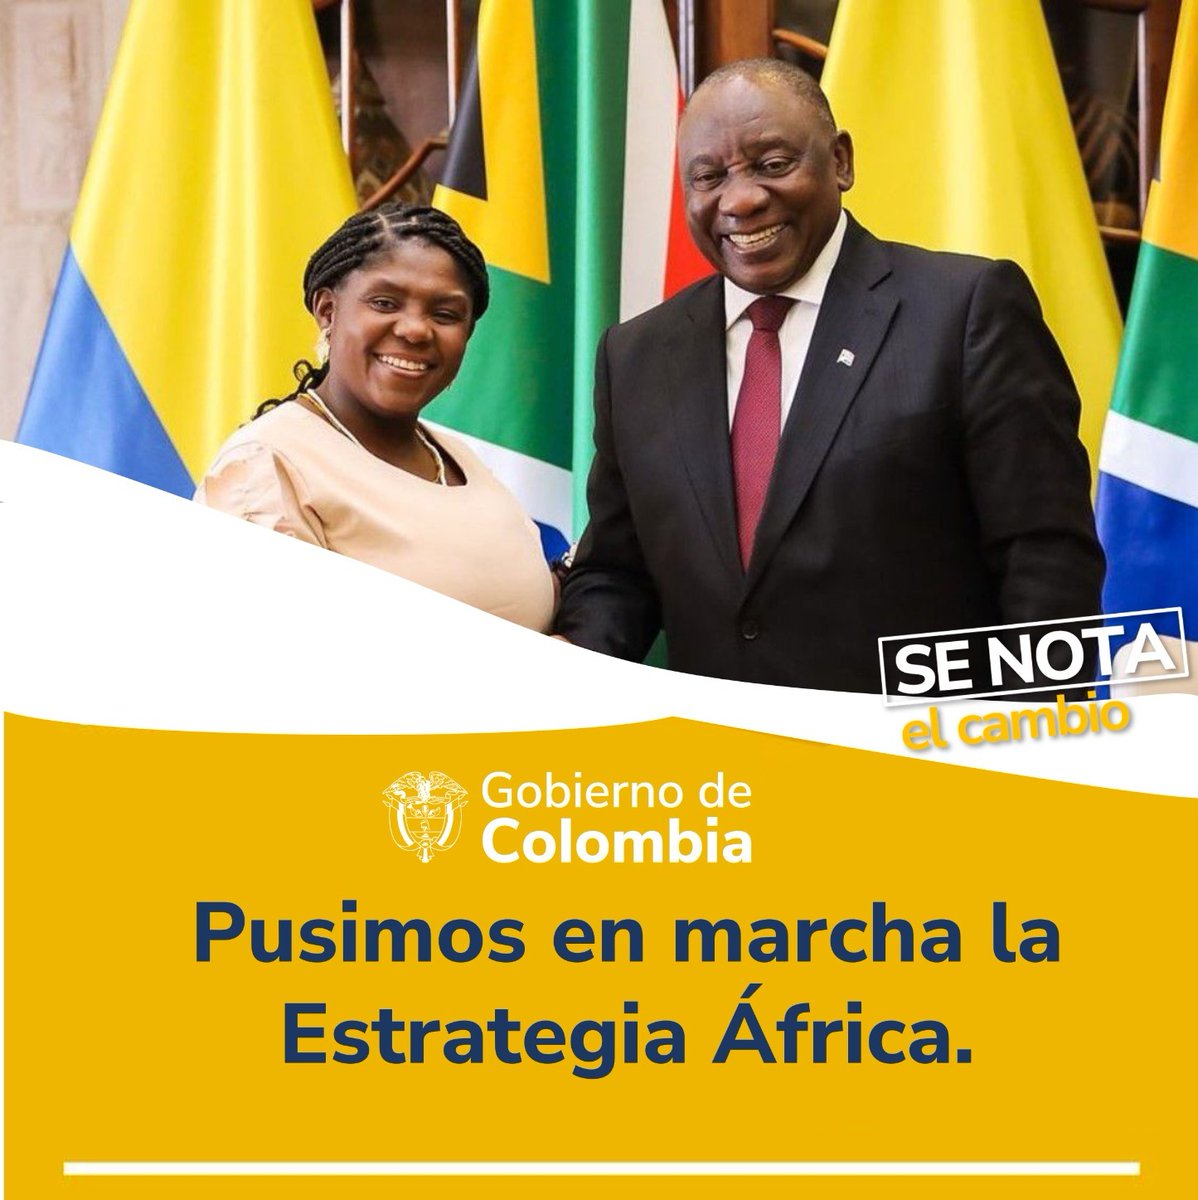 #SeNotaElCambio porque con la #EstrategiaÁfrica hemos logrado importantes resultados en materia de comercio, educación, transporte, cultura, y empoderamiento de la mujer, entre otros.